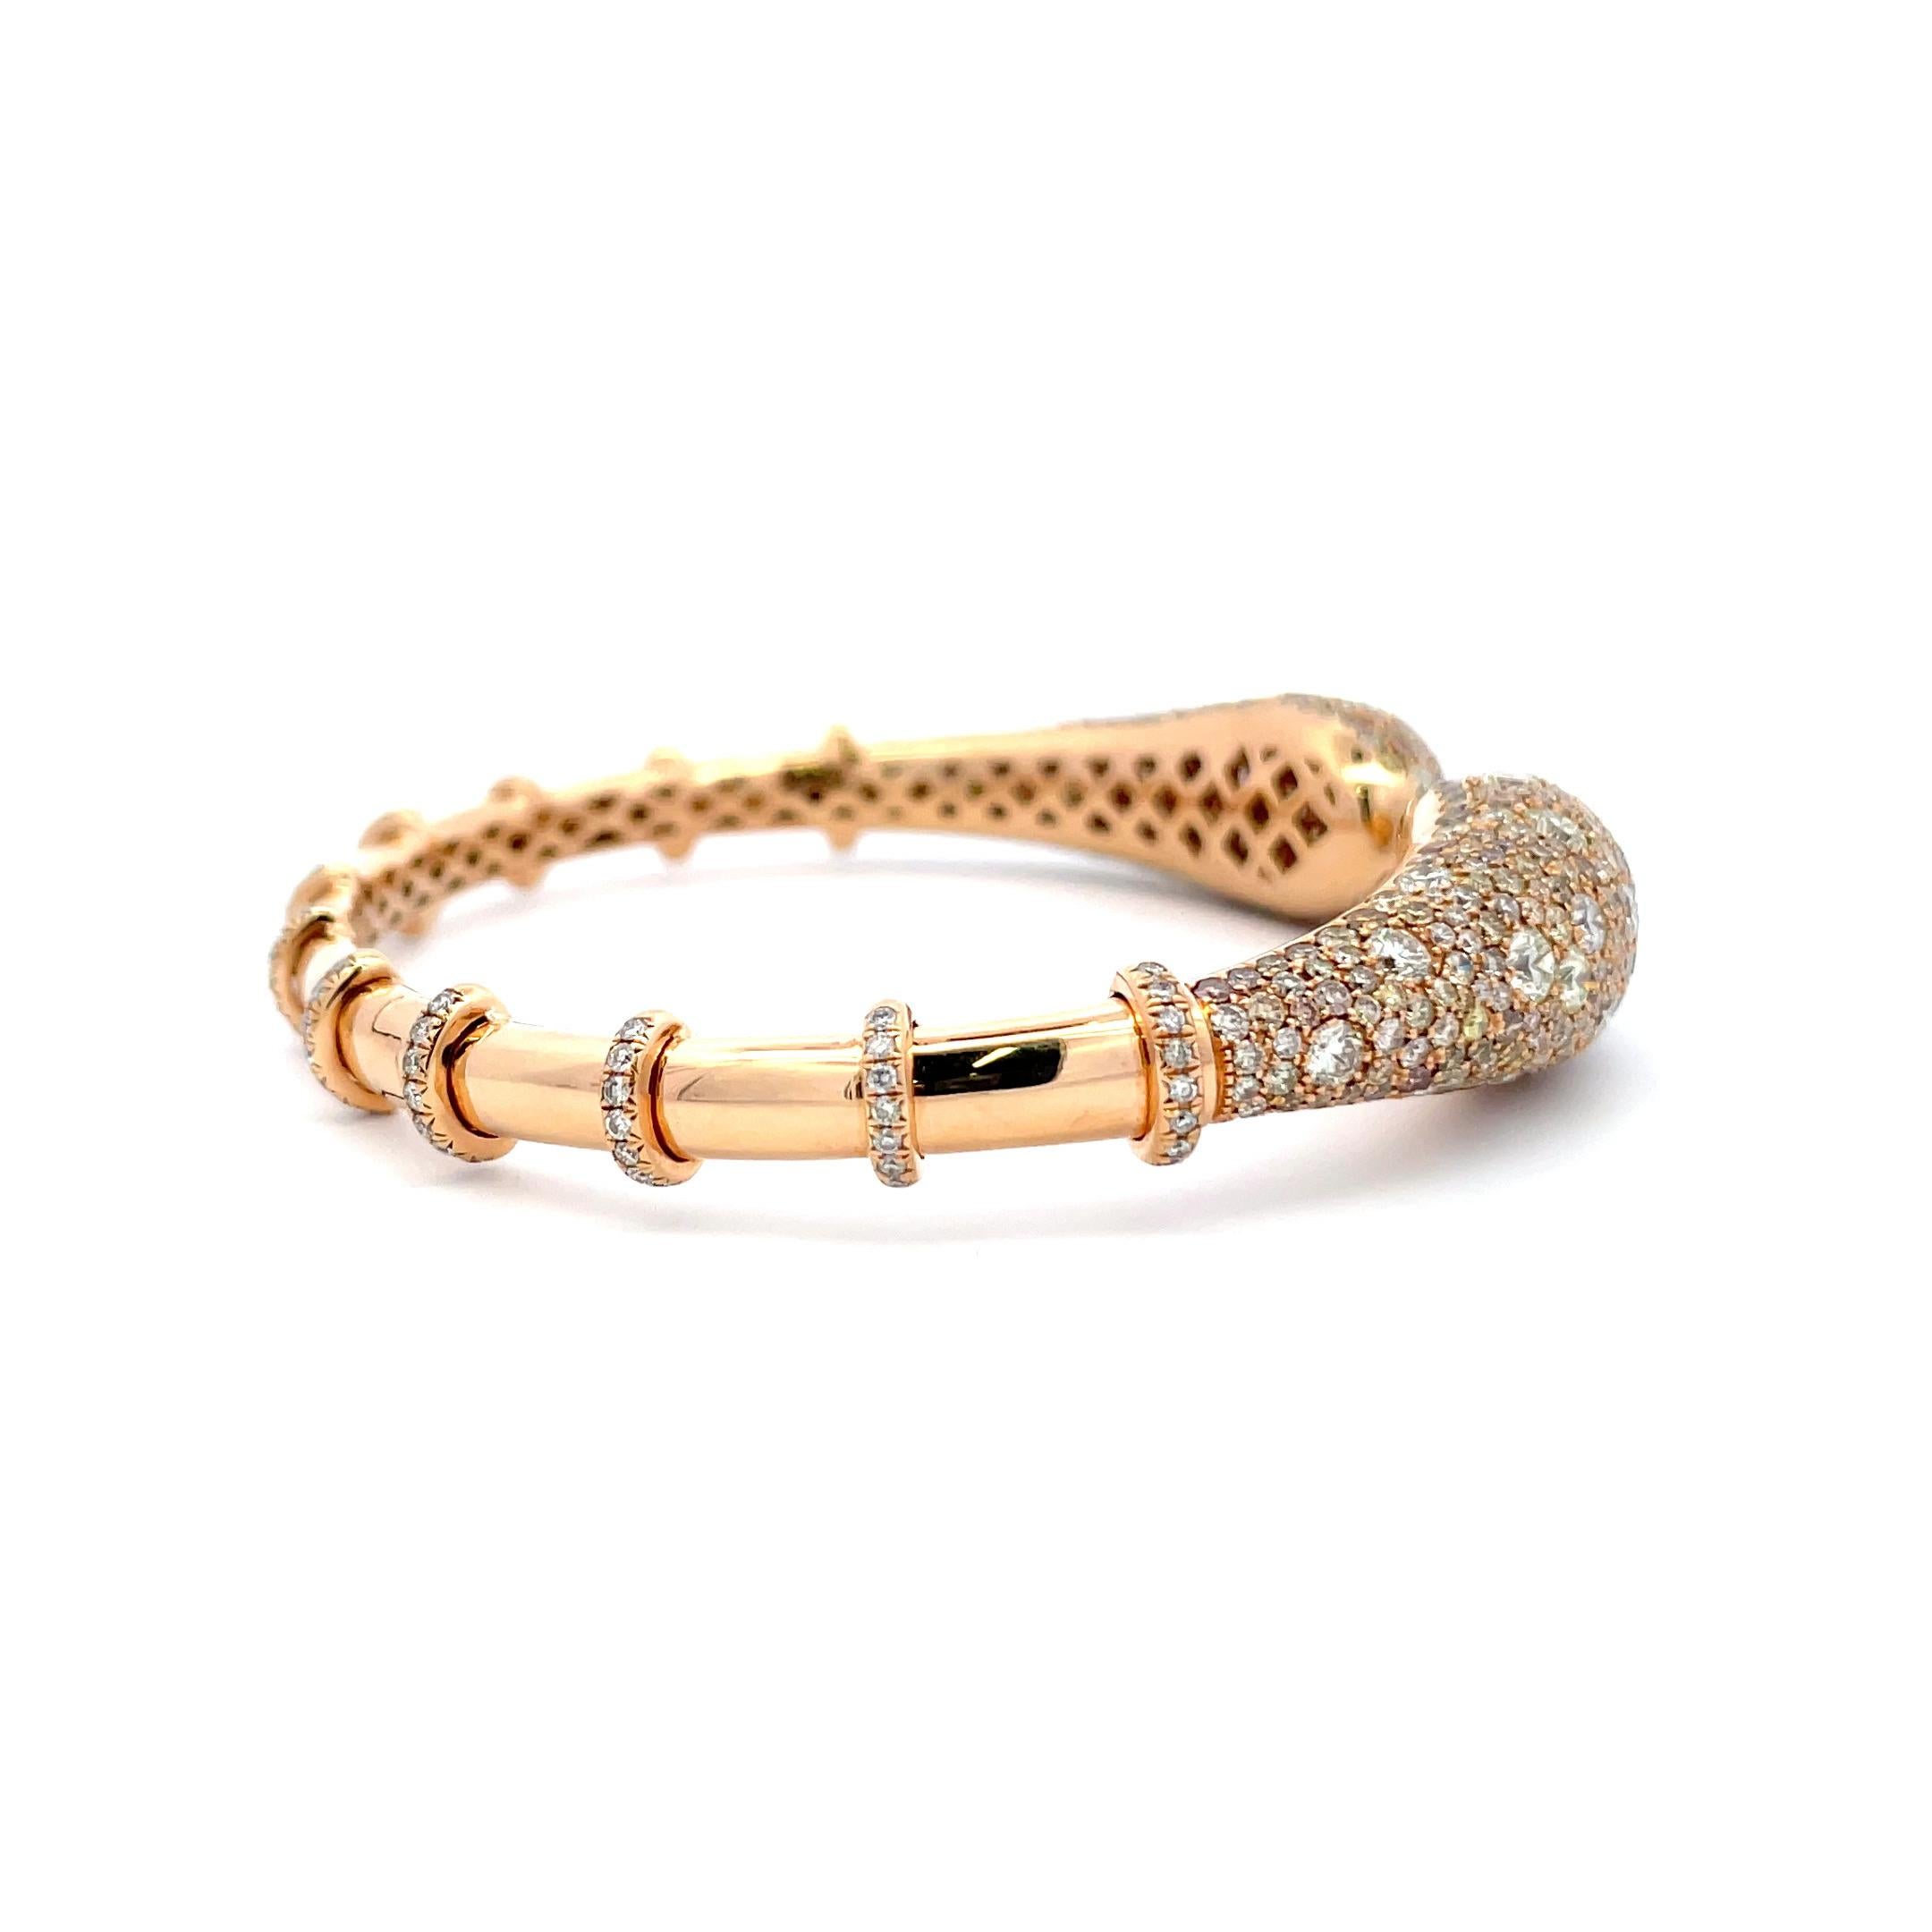 De la société italienne VERDI, ce bracelet ouvert présente de nombreux diamants blancs et de couleur champagne pesant 11,02 carats. 
Le bracelet avant mesure 13,2 mm
Le bracelet latéral mesure 5,1 mm


